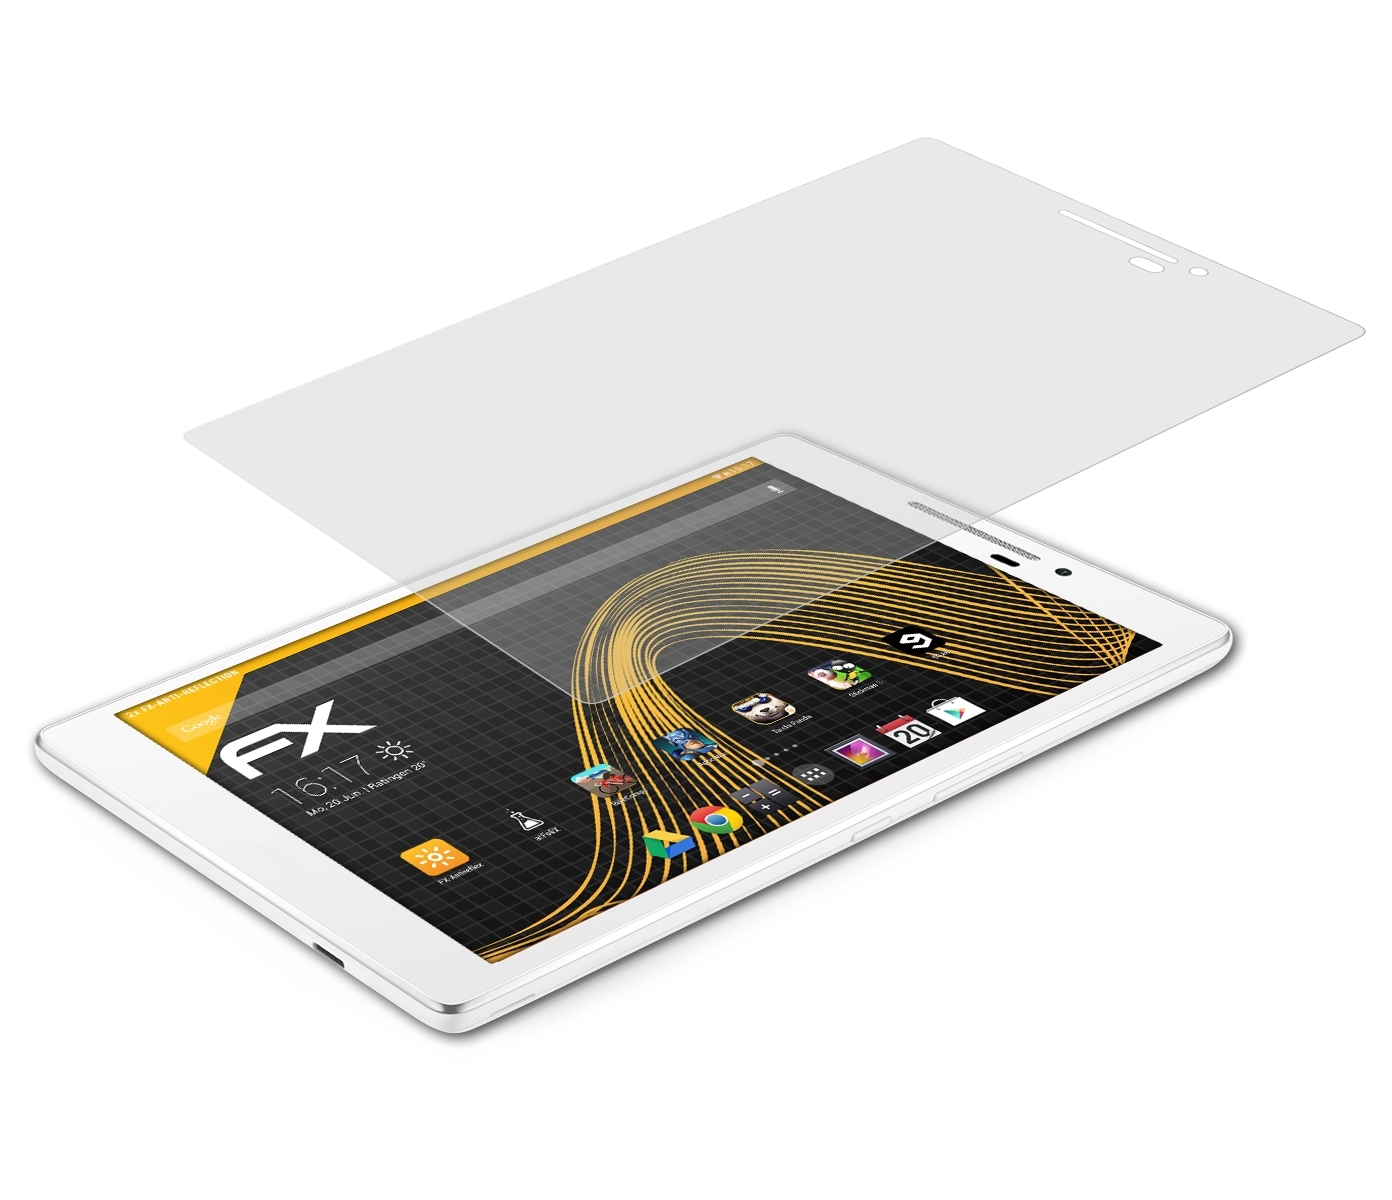 ATFOLIX 2x FX-Antireflex ZenPad (Z370C)) 7.0 Displayschutz(für Asus